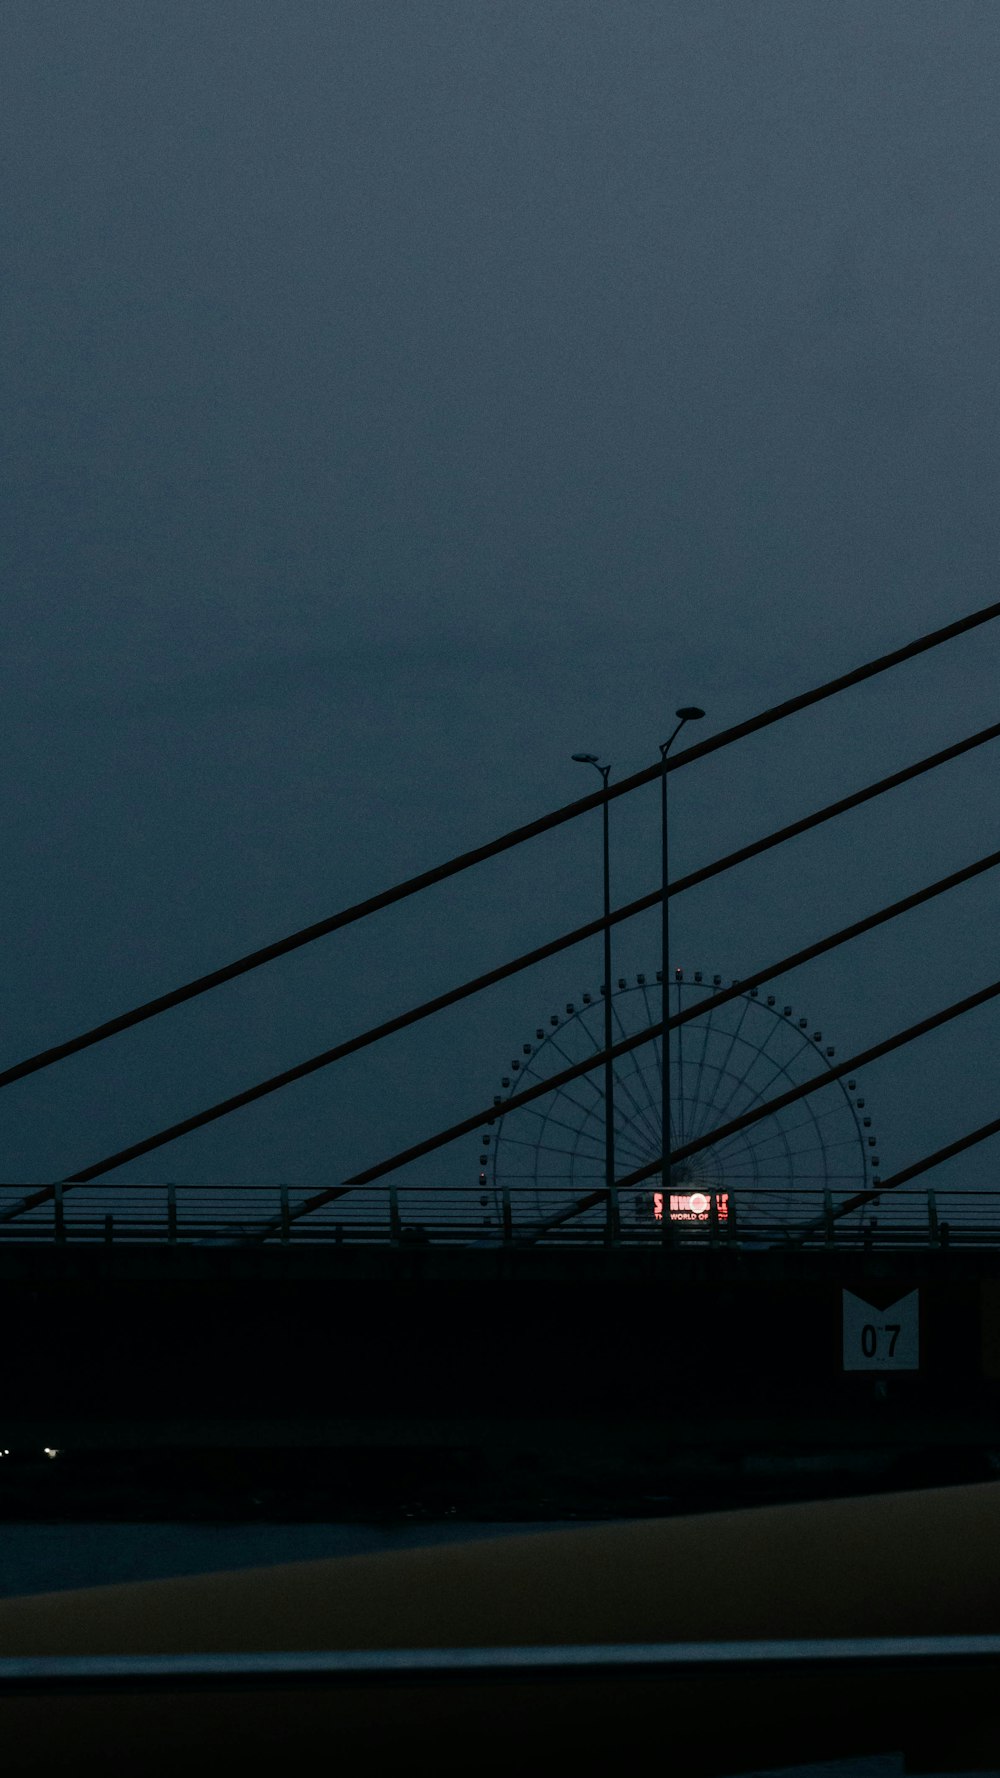 Una vista de un puente por la noche con una torre del reloj en la distancia